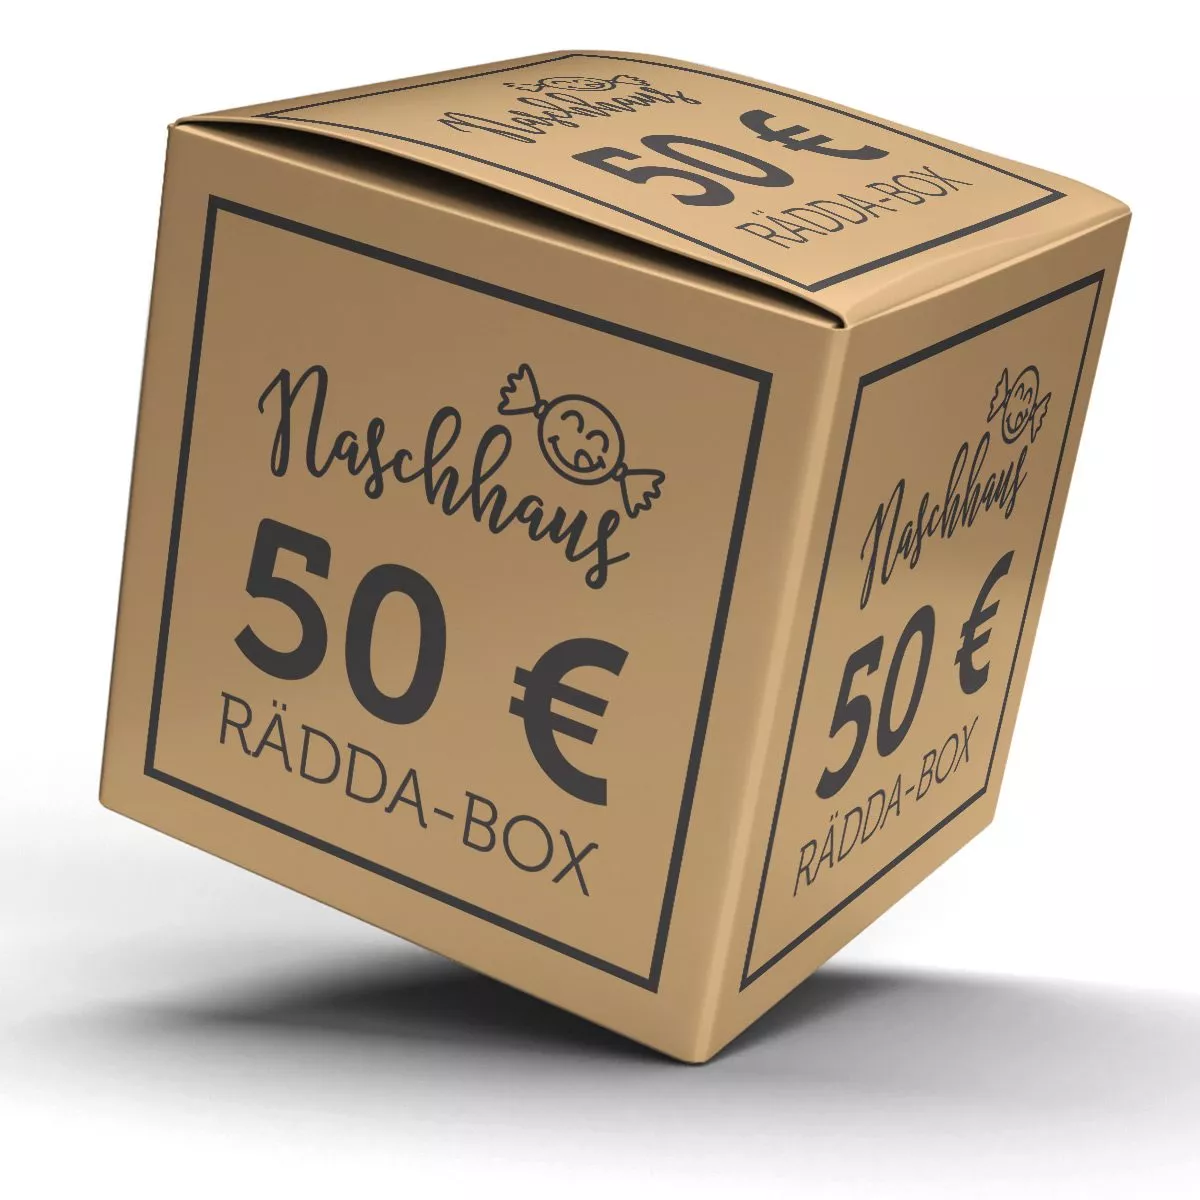 Die Naschhaus Rädda-Box: 24,99€ statt 50,00€ – Süßes vor der Tonne retten 1